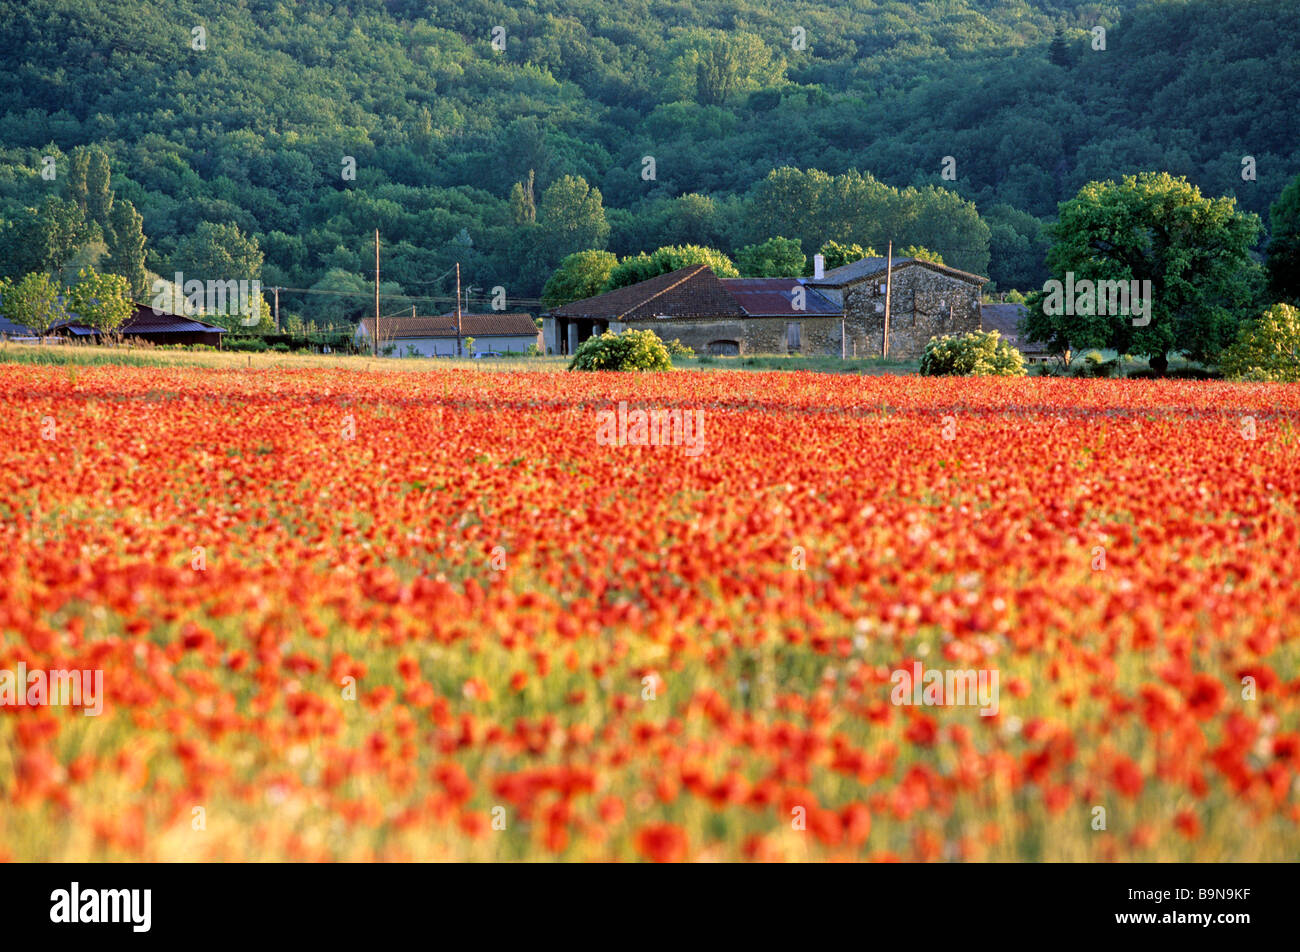 France, Drome, Drome Provencale, landscape near Crest, poppies Stock Photo